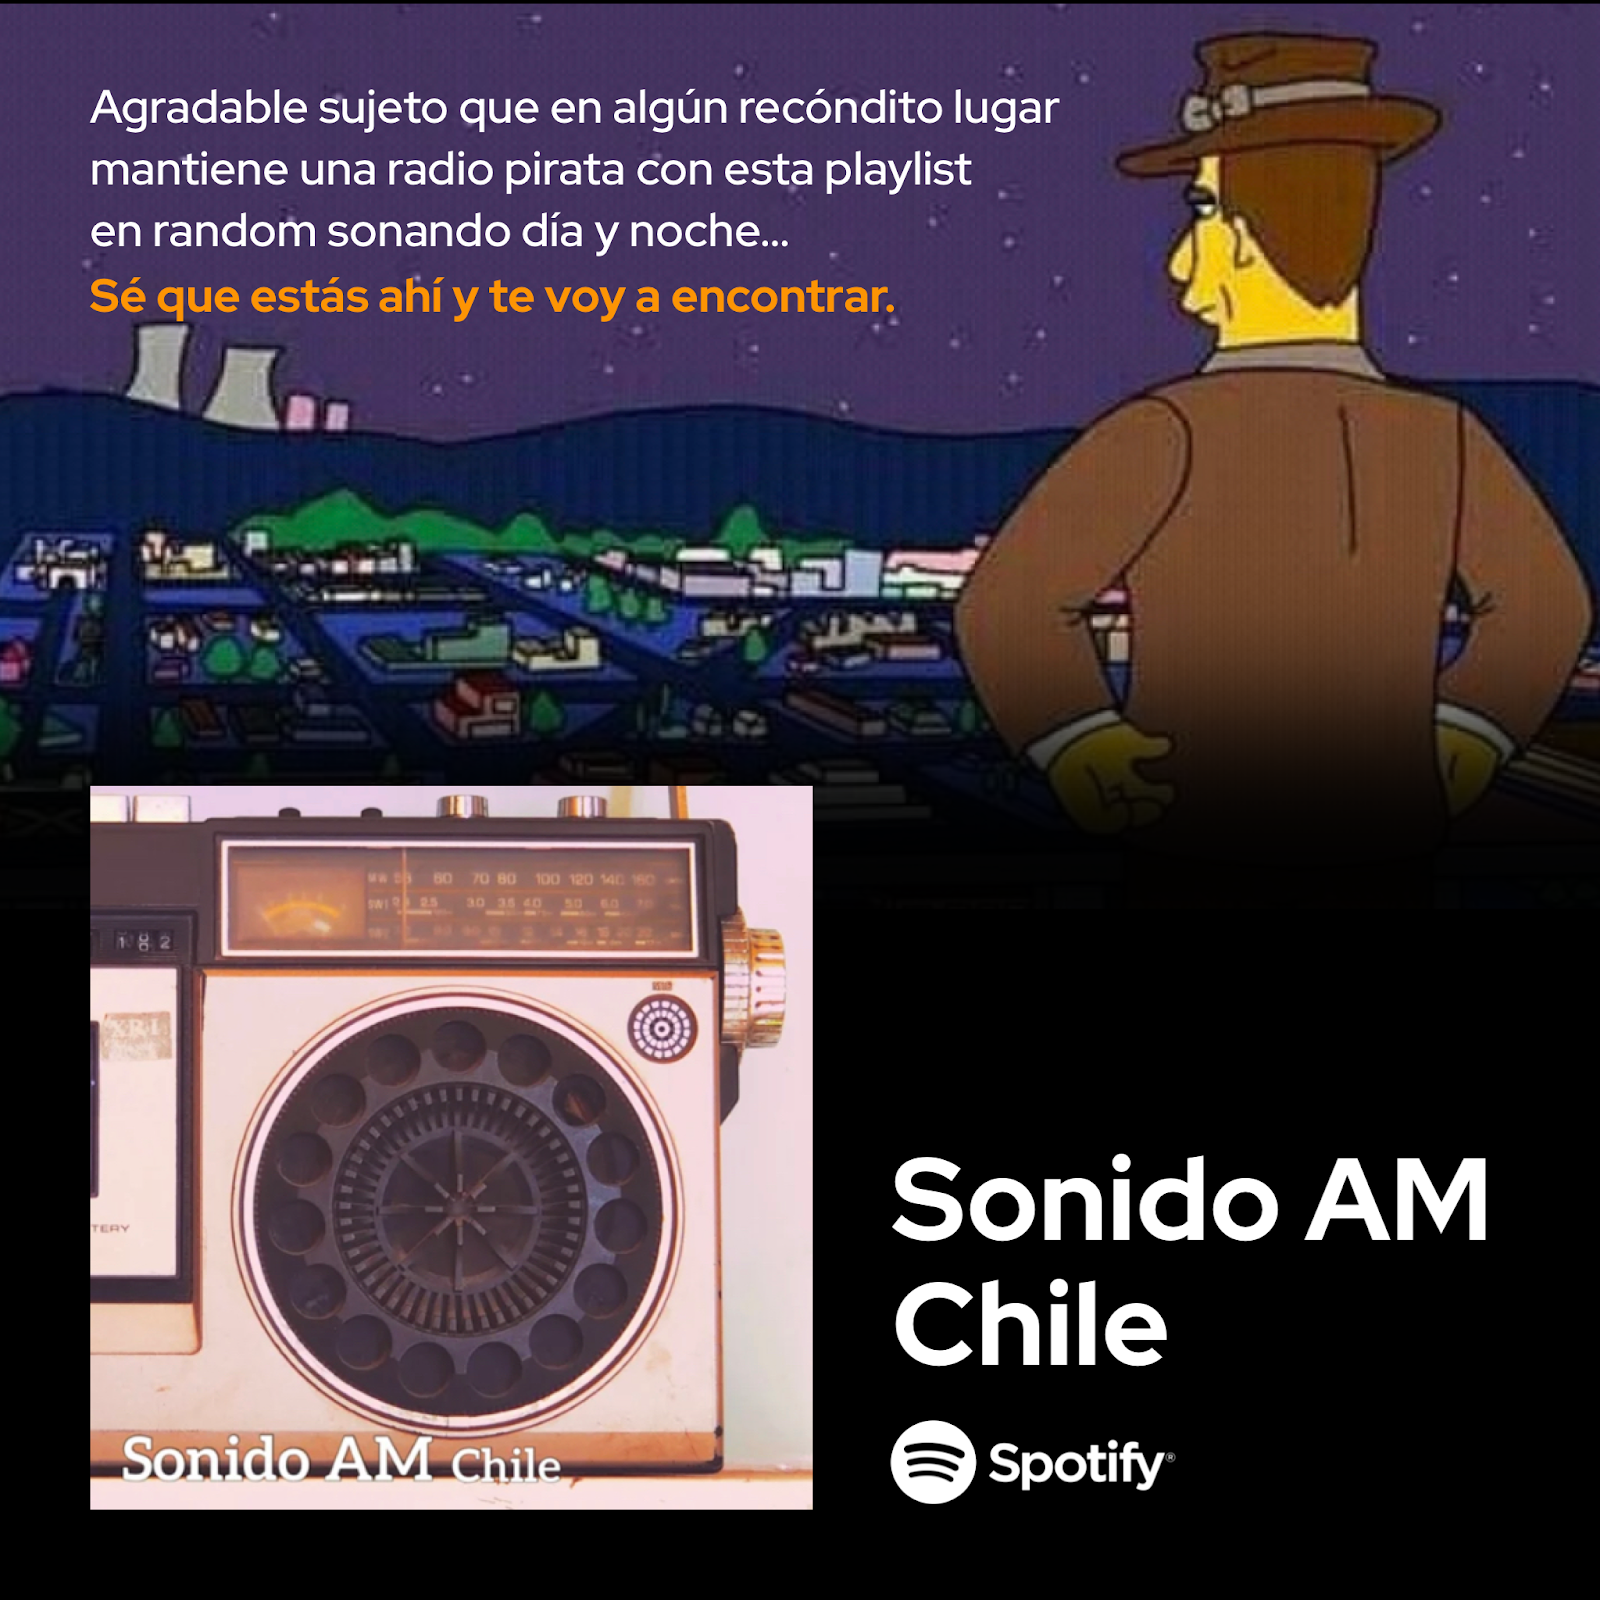 Sonido AM Chile - Playlist en Spotify